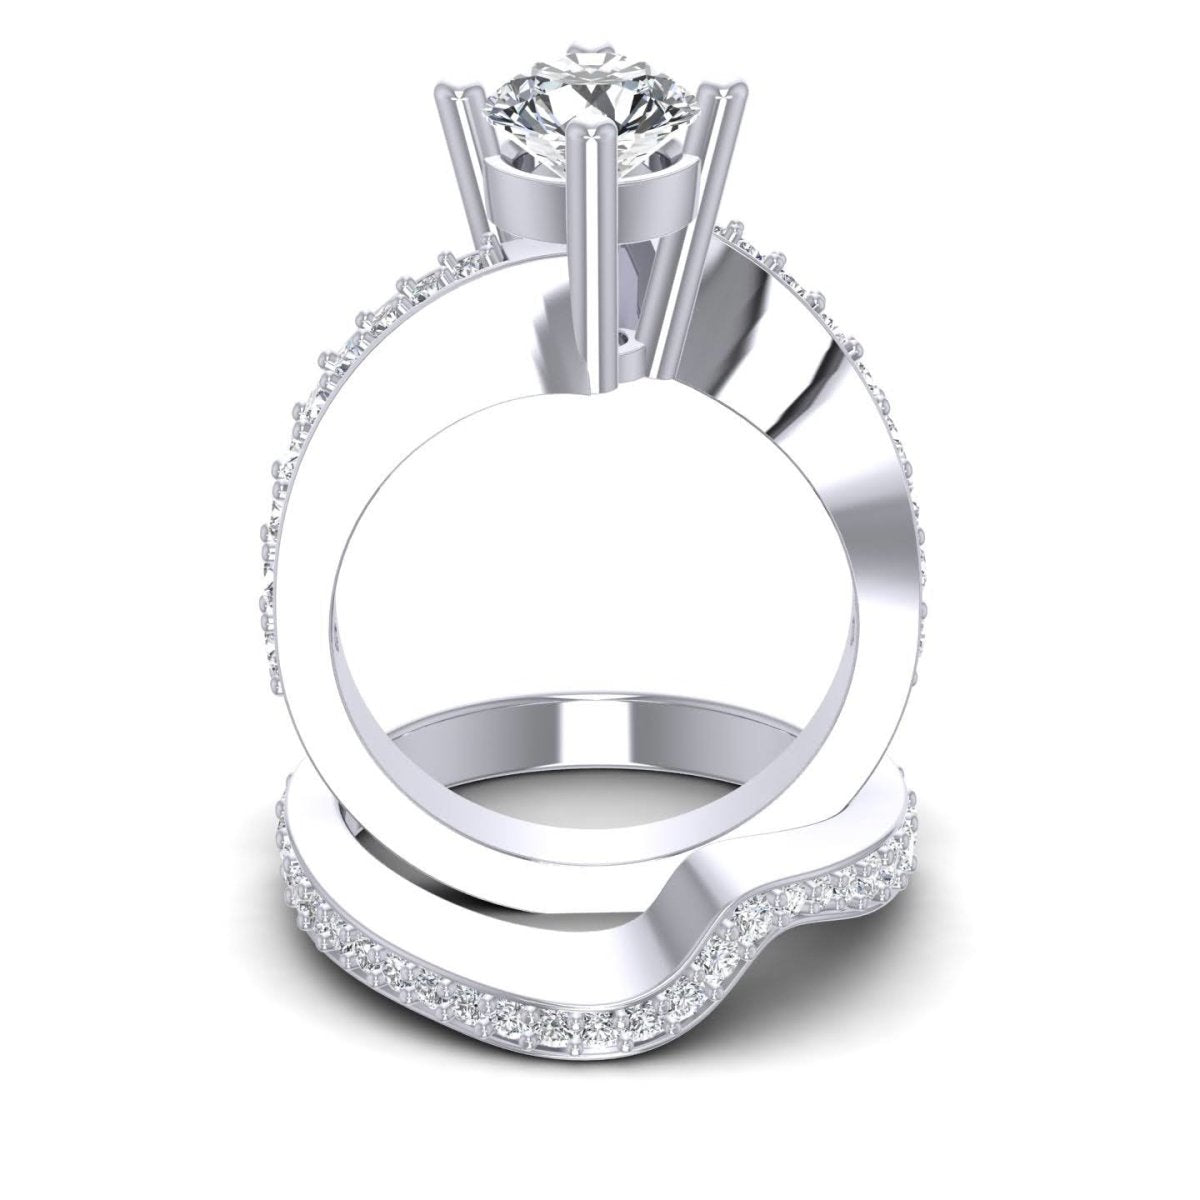 Delightful 1.05 CT Round Cut Diamond Bridal Set in 14KT White Gold - Primestyle.com